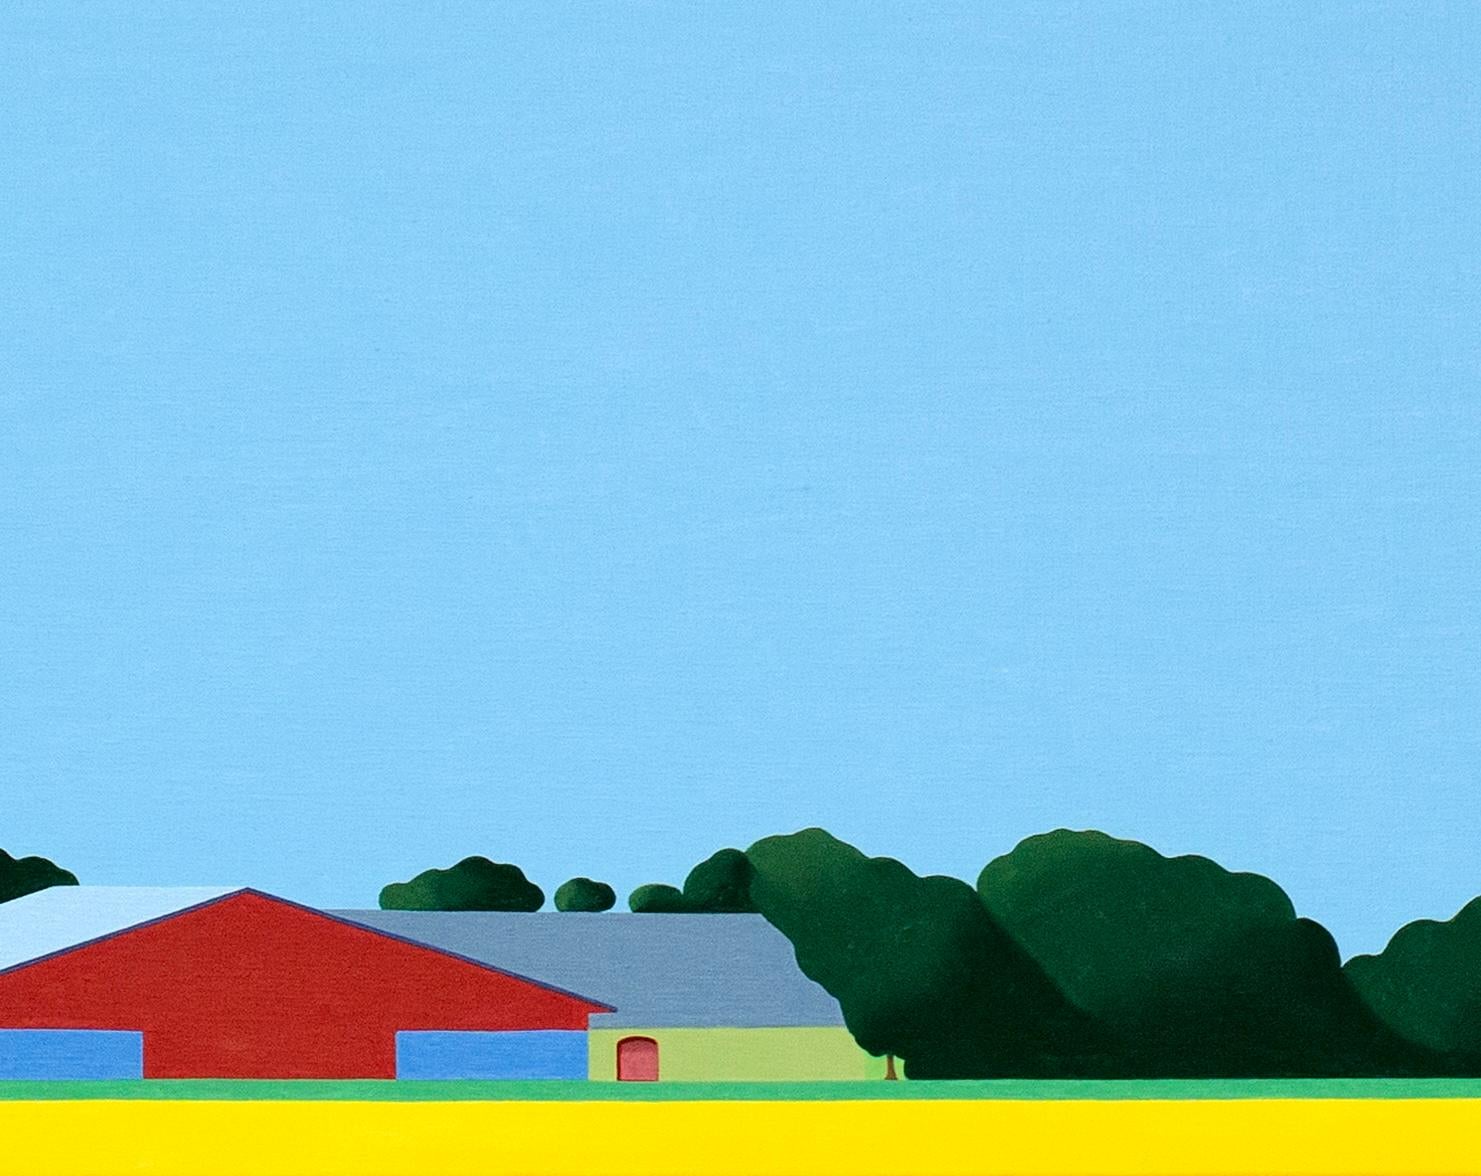 Dieses schöne Landschaftsgemälde von Jeroen Allart ist Teil seiner minimalistischen Landschaftsmalerei, die er in seinem Heimatland, den Niederlanden, angefertigt hat.

Ein Bauernhof steht vor Ihnen am Horizont. Eine Windmühle durchschneidet